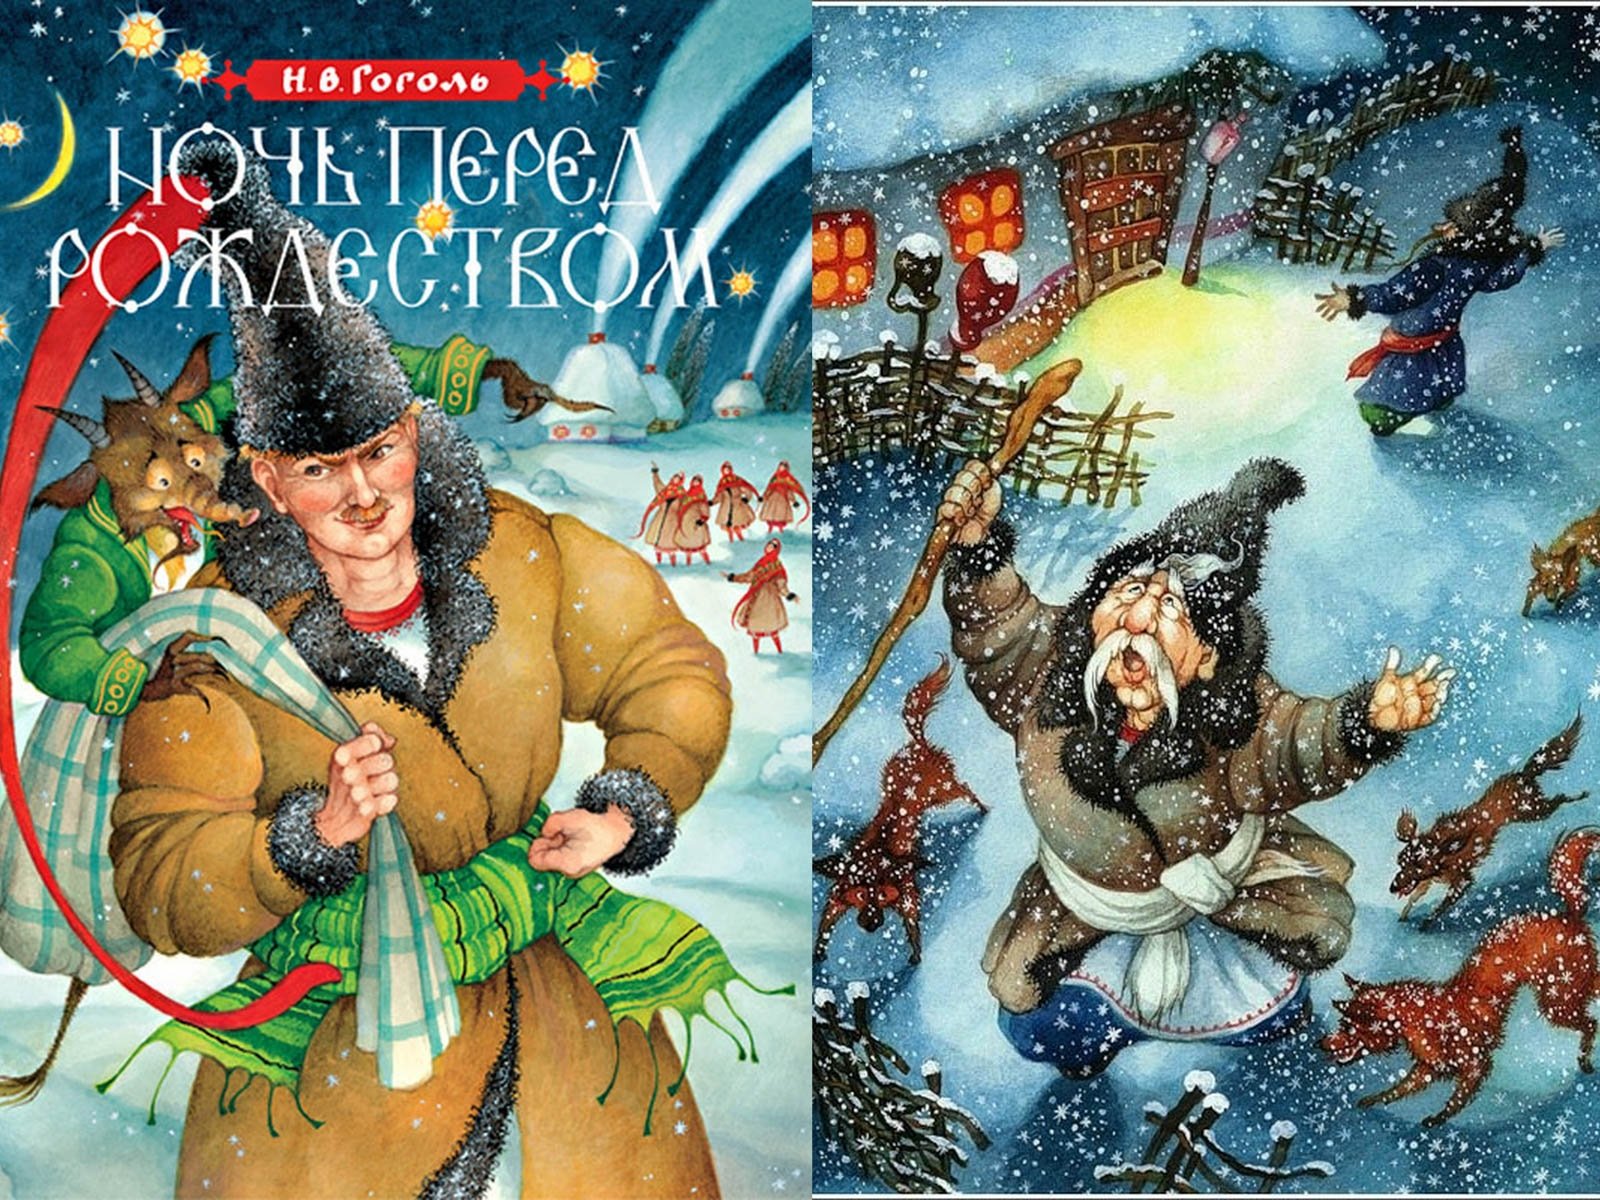 Ночь перед рождеством 2. Н В Гоголь ночь перед Рождеством. Иллюстрации к книге Гоголя ночь перед Рождеством. Иллюстрацию к произведению н.в.Гоголя "ночь перед Рождеством".